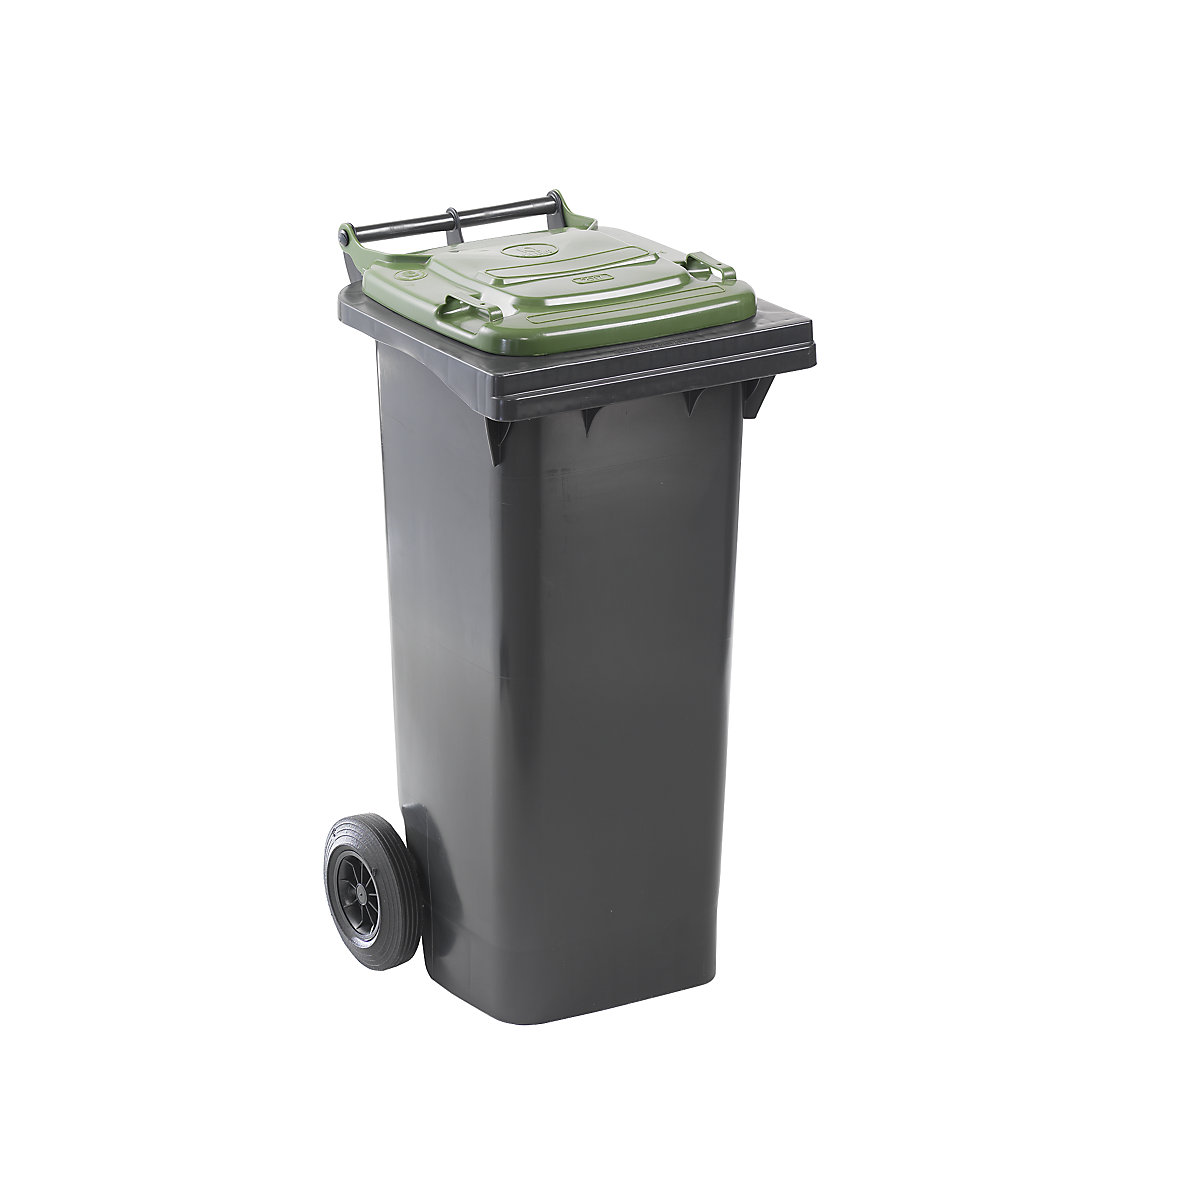 Waste bin to DIN EN 840, capacity 80 l, WxHxD 448 x 975 x 530 mm, charcoal, green lid-6